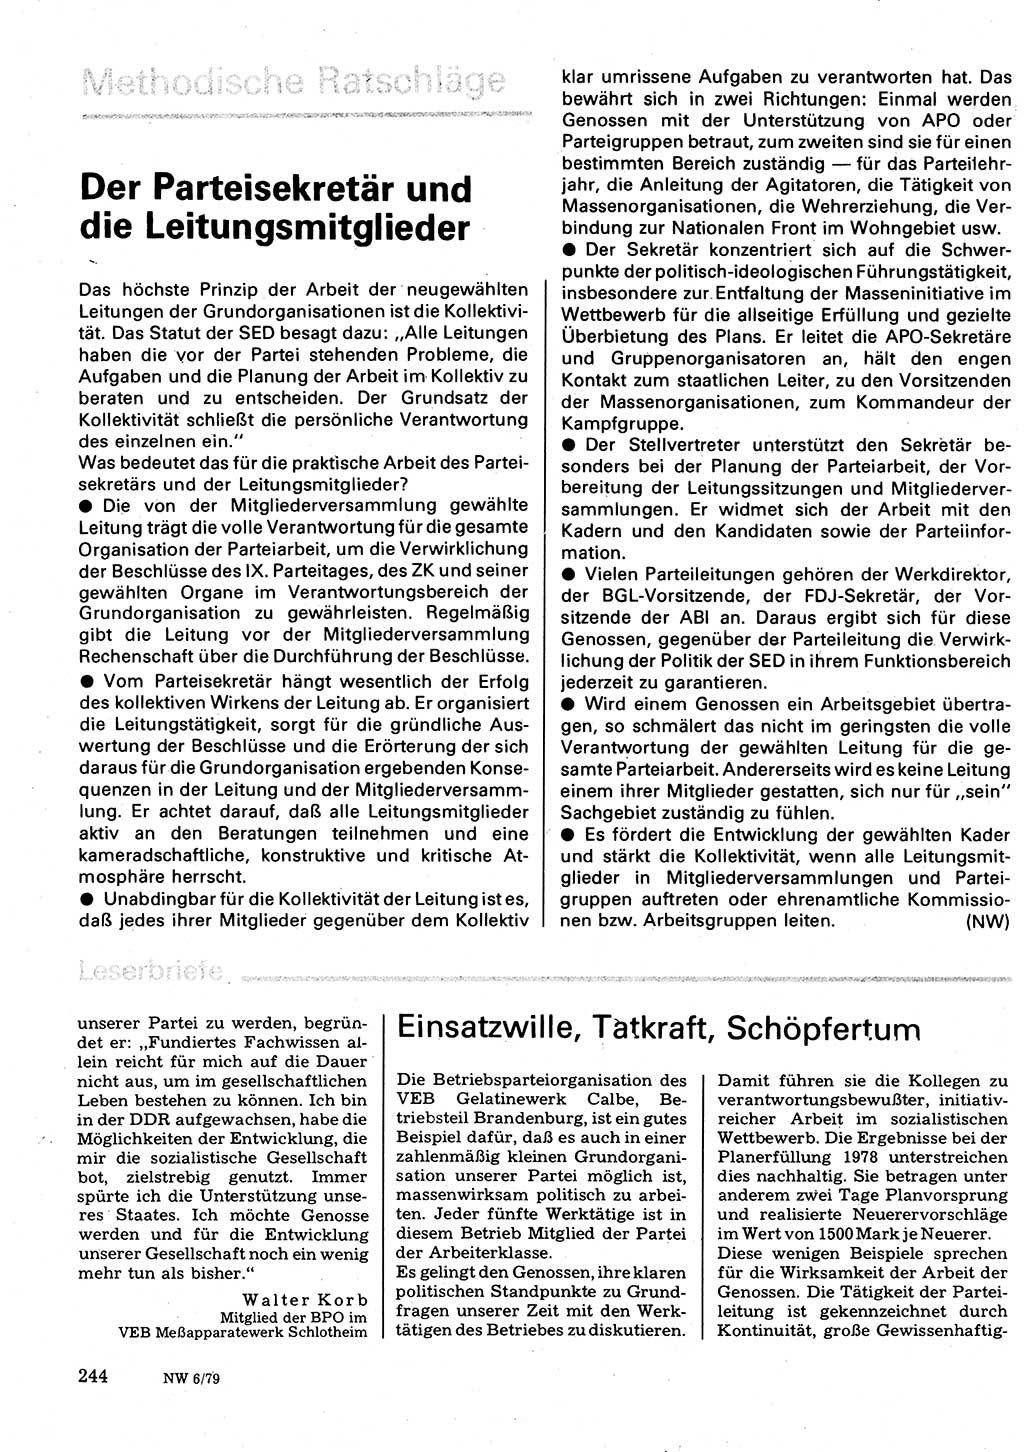 Neuer Weg (NW), Organ des Zentralkomitees (ZK) der SED (Sozialistische Einheitspartei Deutschlands) für Fragen des Parteilebens, 34. Jahrgang [Deutsche Demokratische Republik (DDR)] 1979, Seite 244 (NW ZK SED DDR 1979, S. 244)